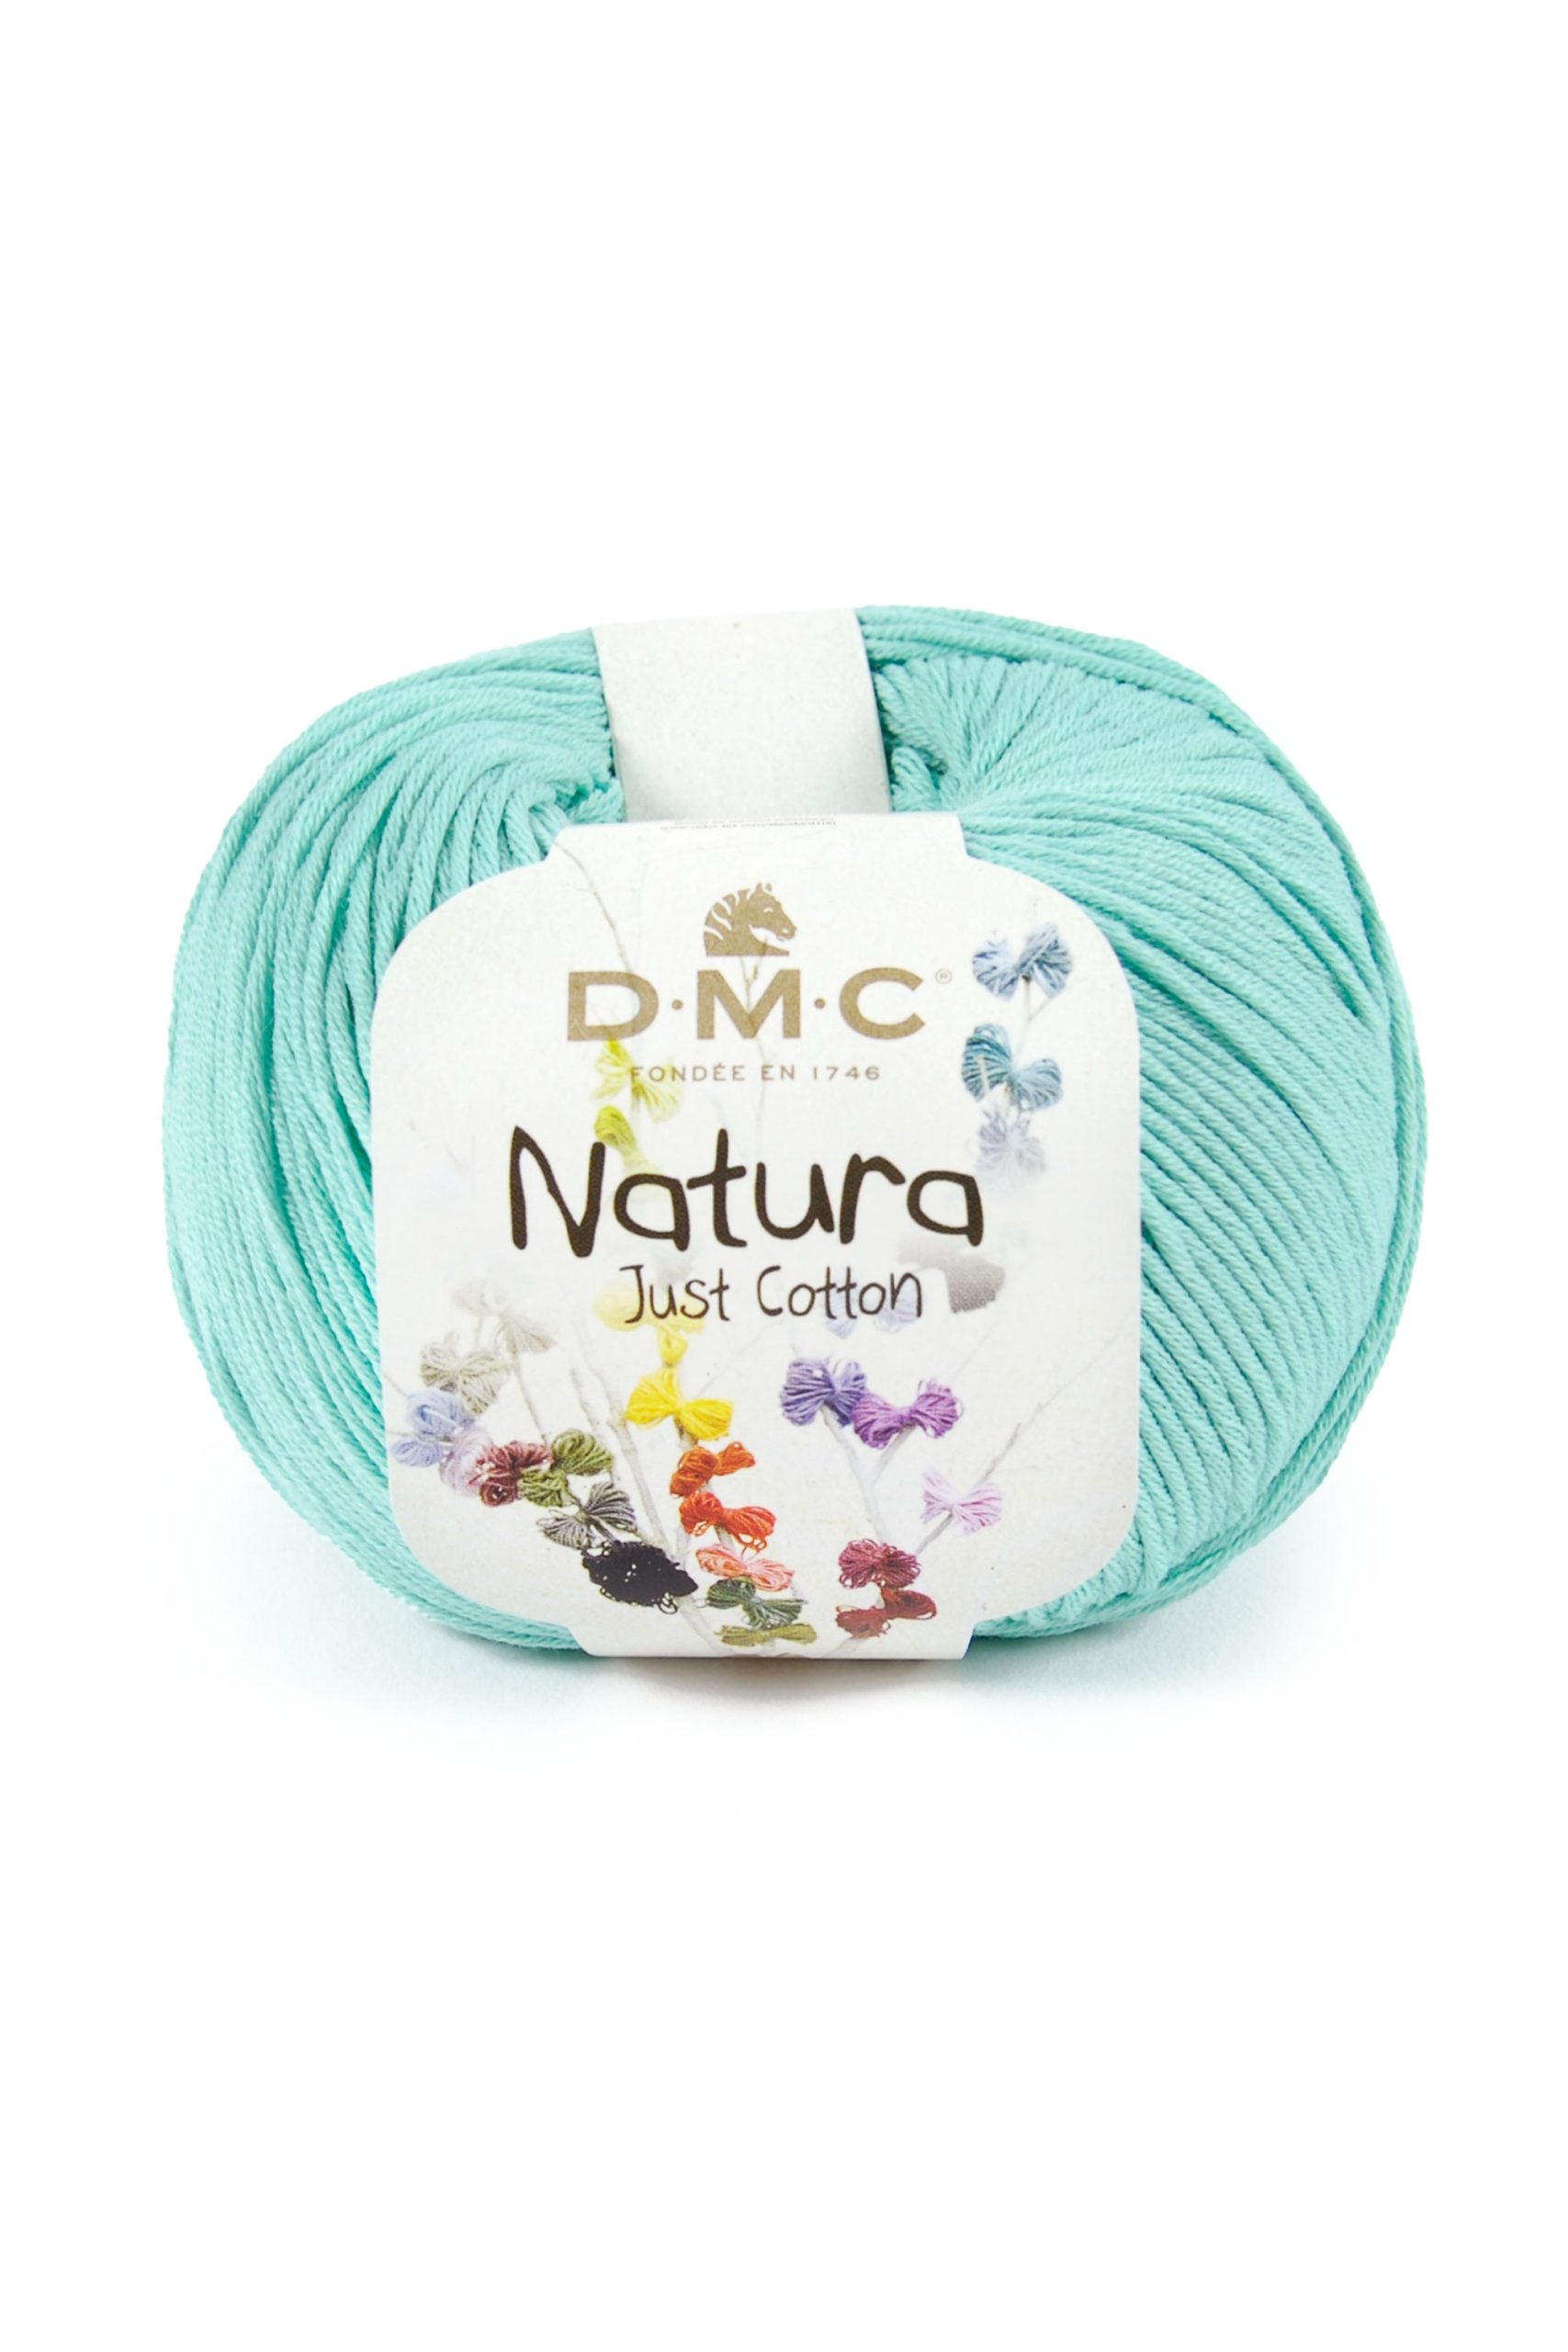 Cotone Dmc Natura Just Cotton Colore N99